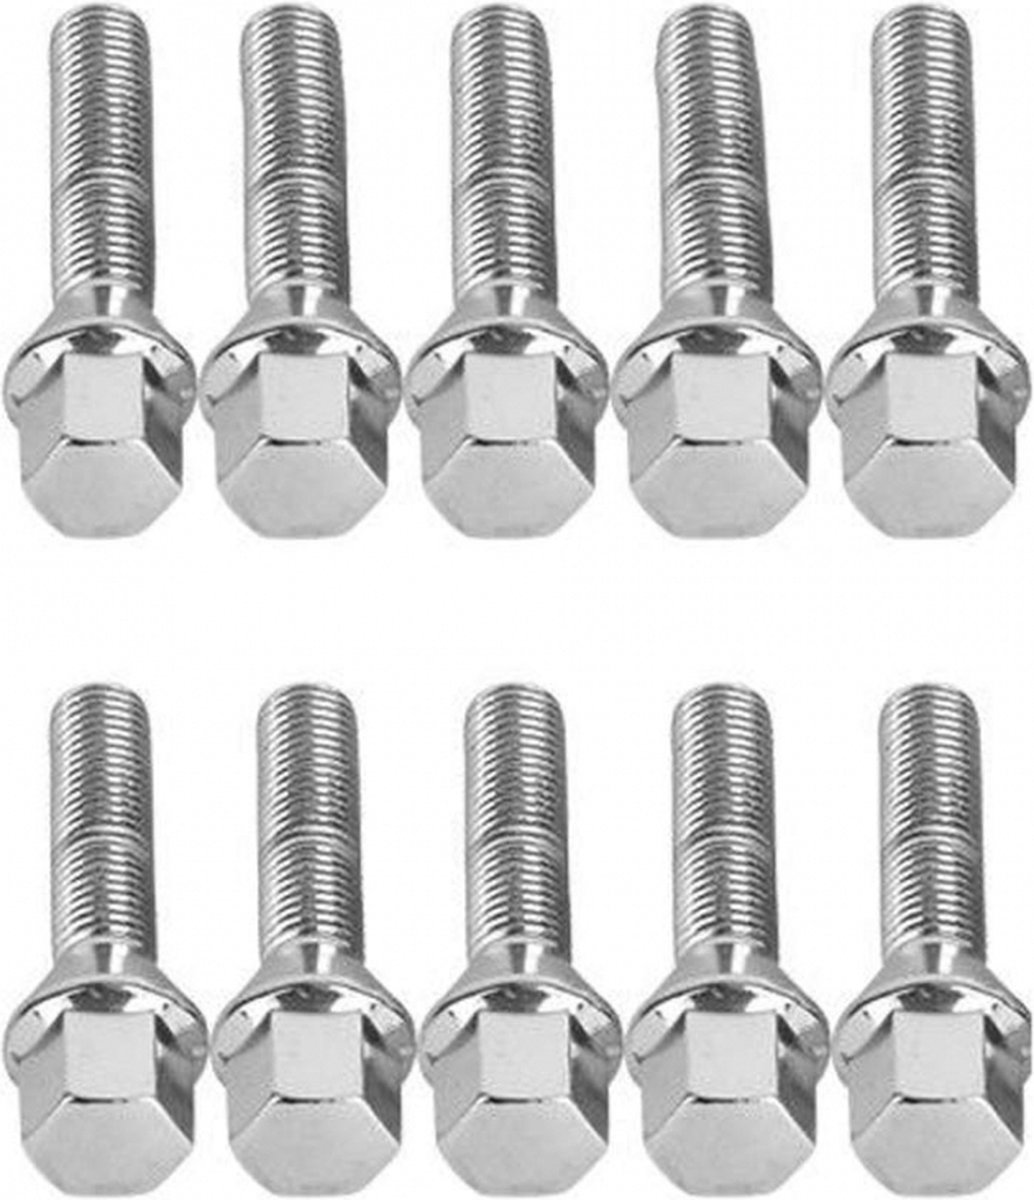 Verlengde conische wielbouten 55mm - M12x1.5 - Chroom - Set van 10 bouten / M12x1,5 / M12 x 1,5 / M12 x 1.5